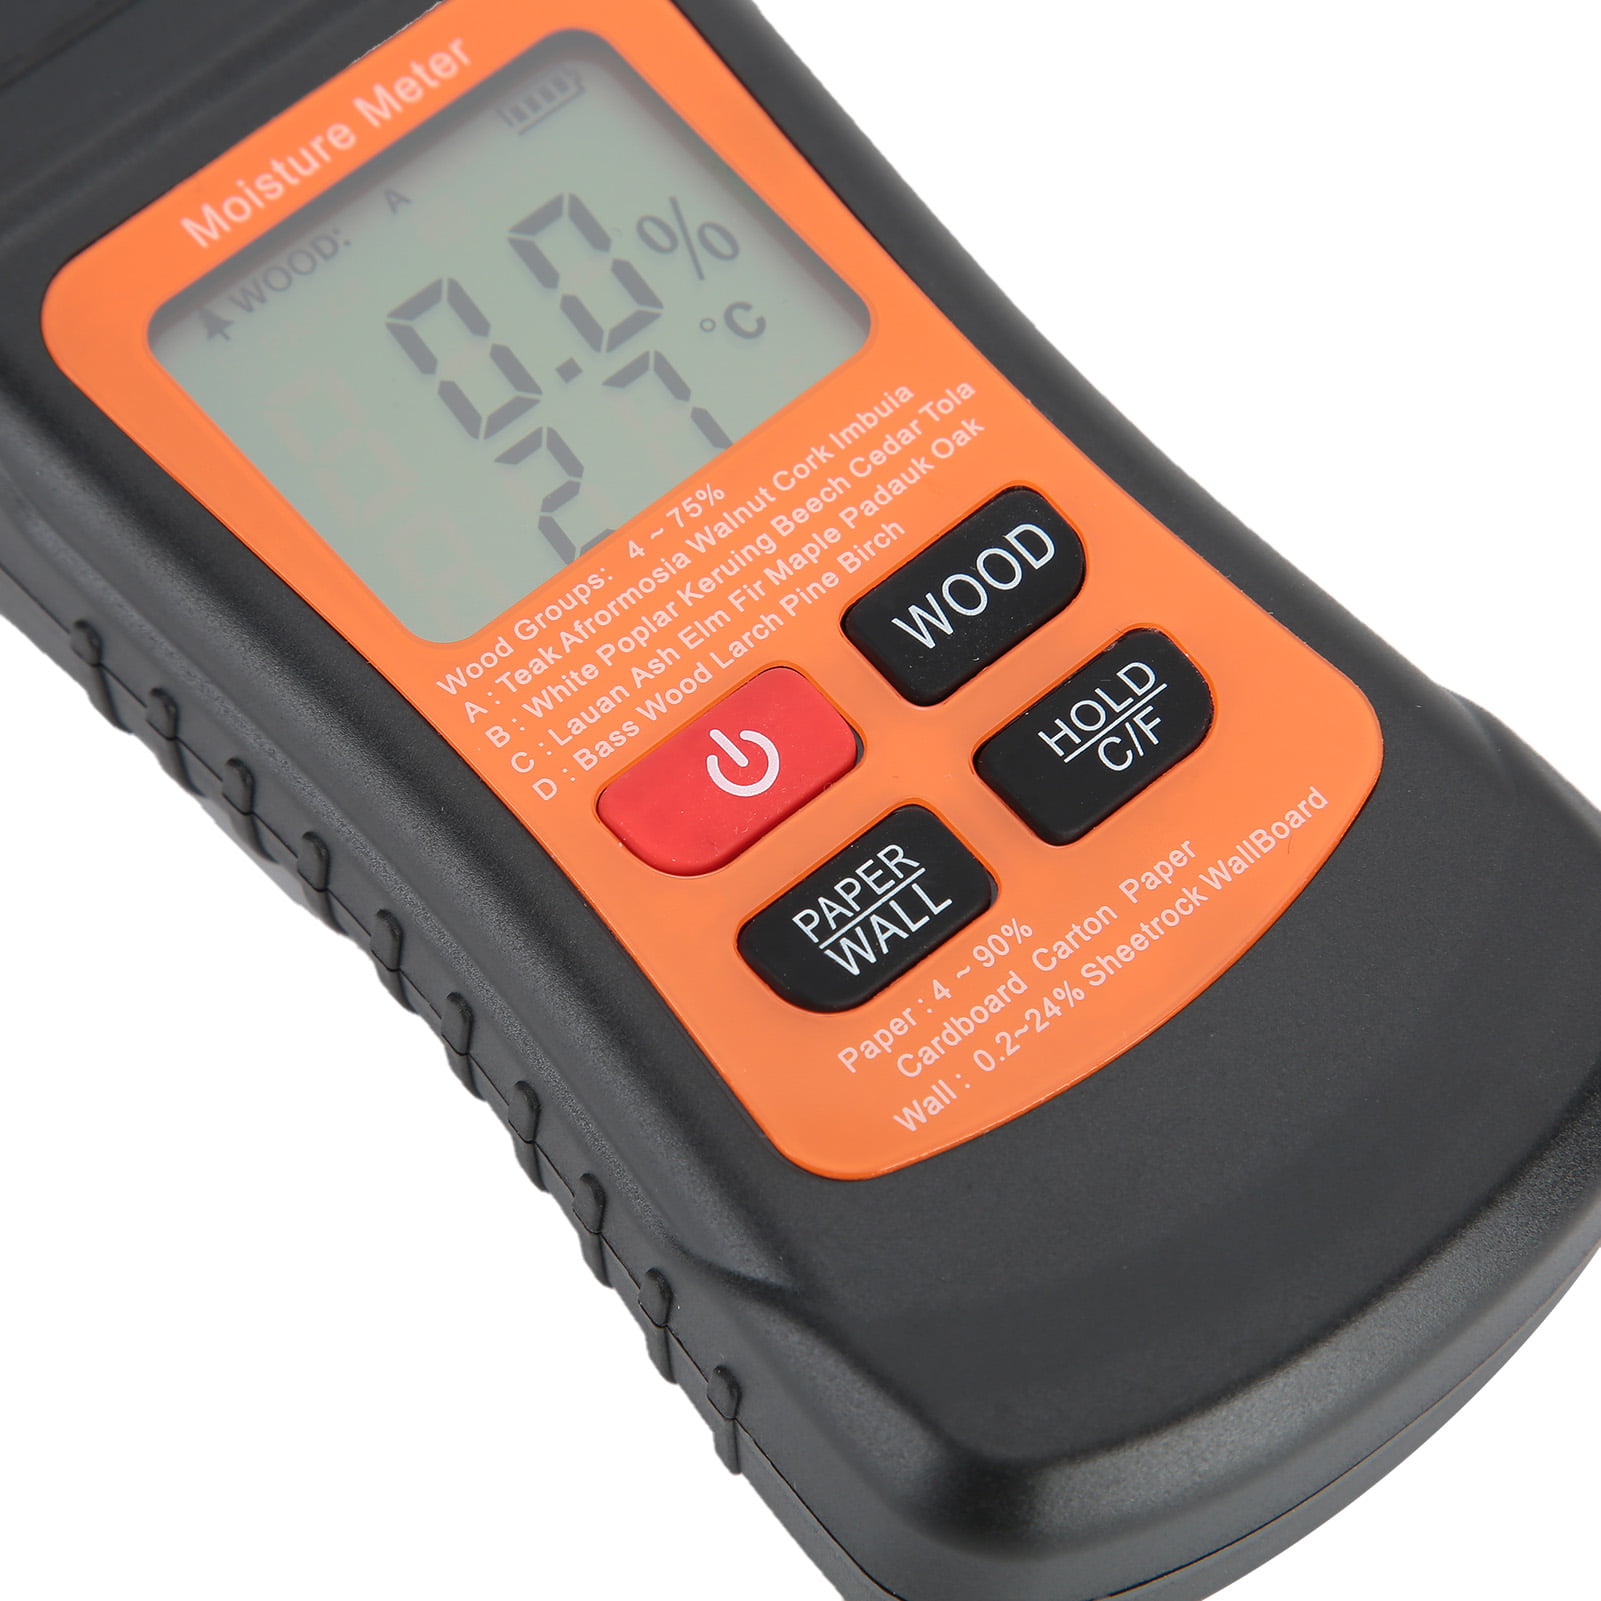 Damp Meter Moisture Detector Digital Brennenstuhl MD 1298680 